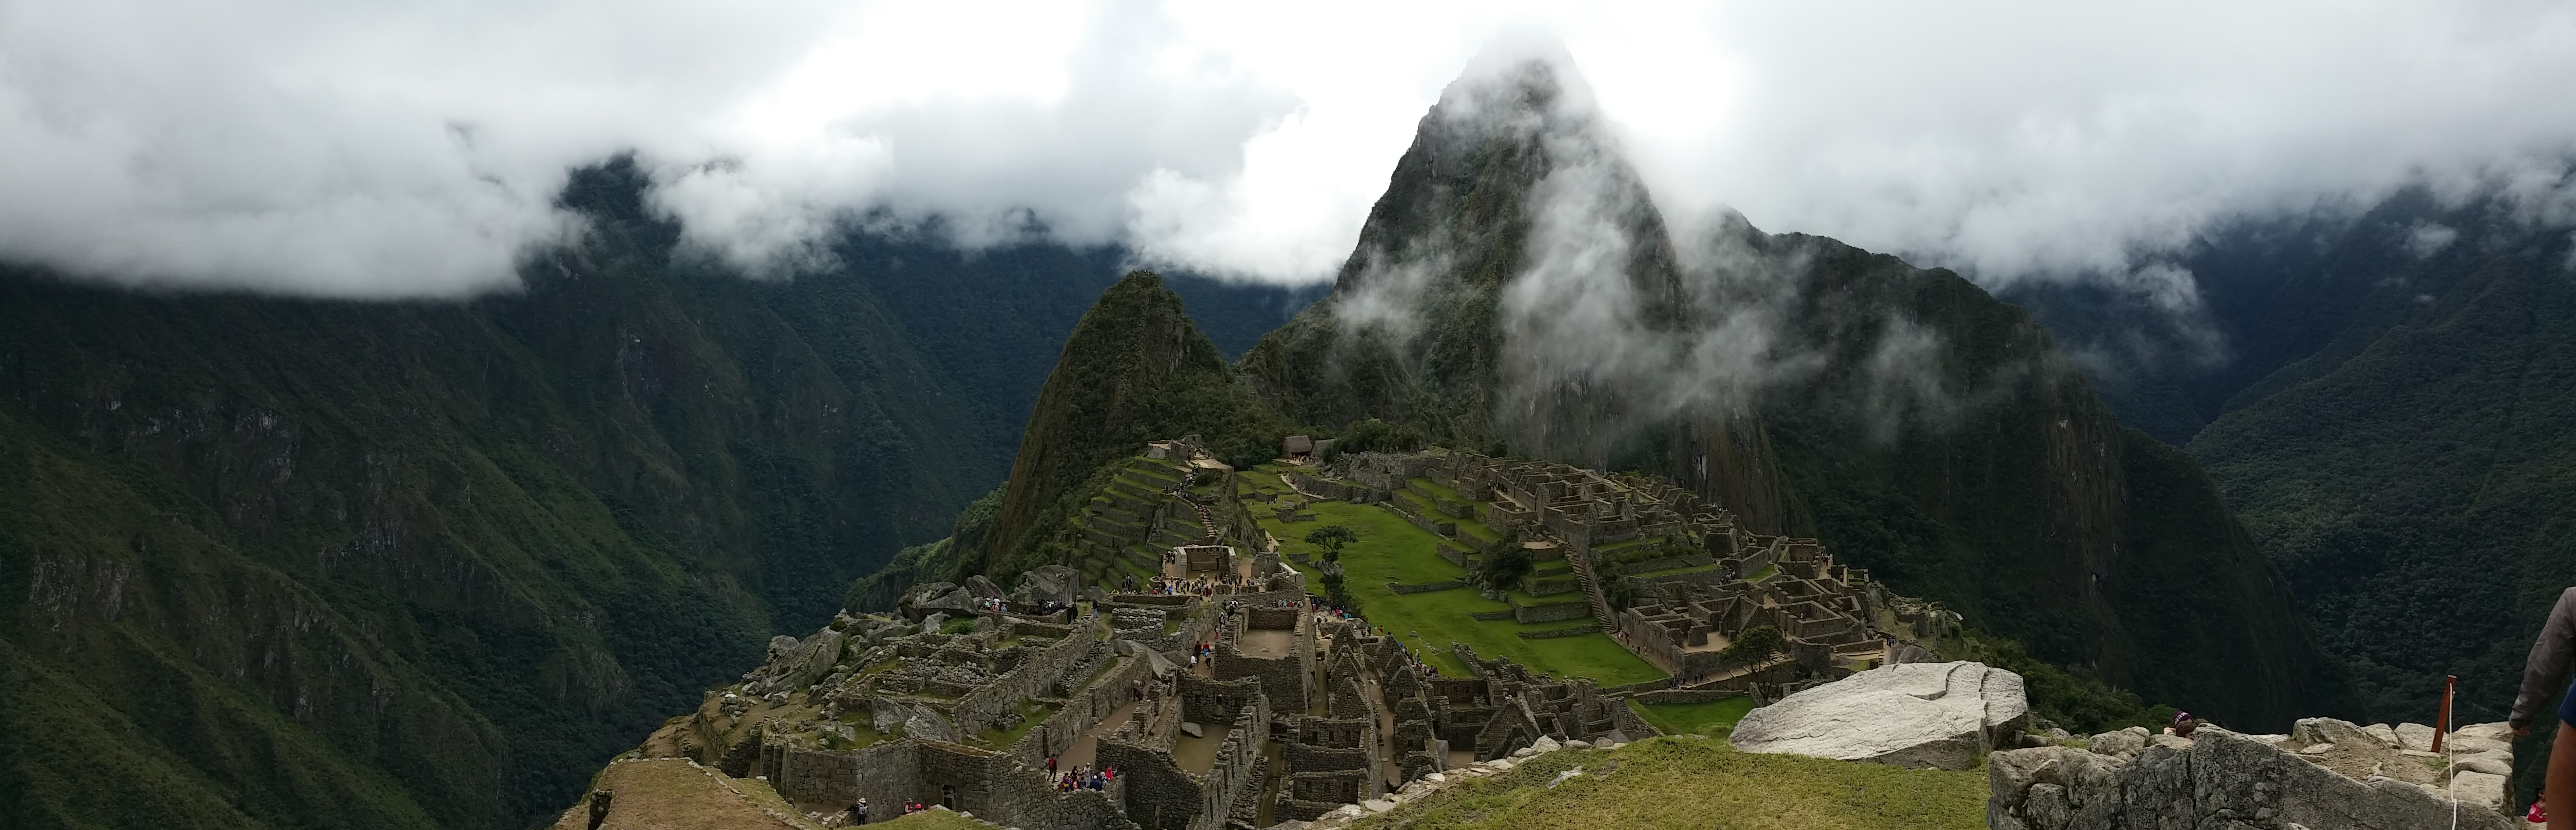 Machu Picchu - vallée sacrée